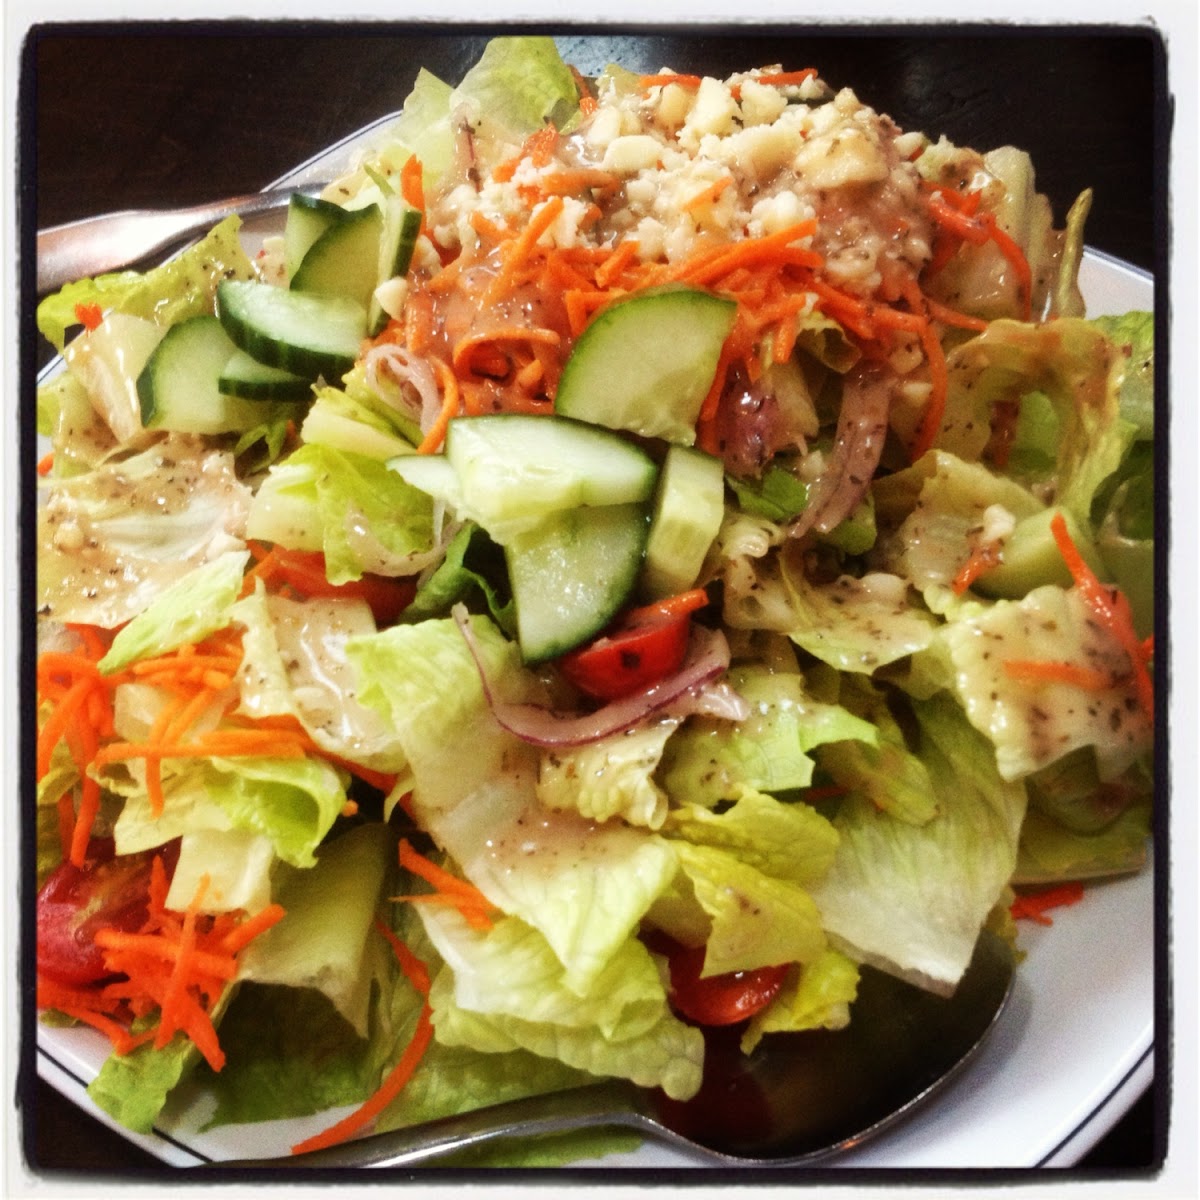 House Salad (no croutons)